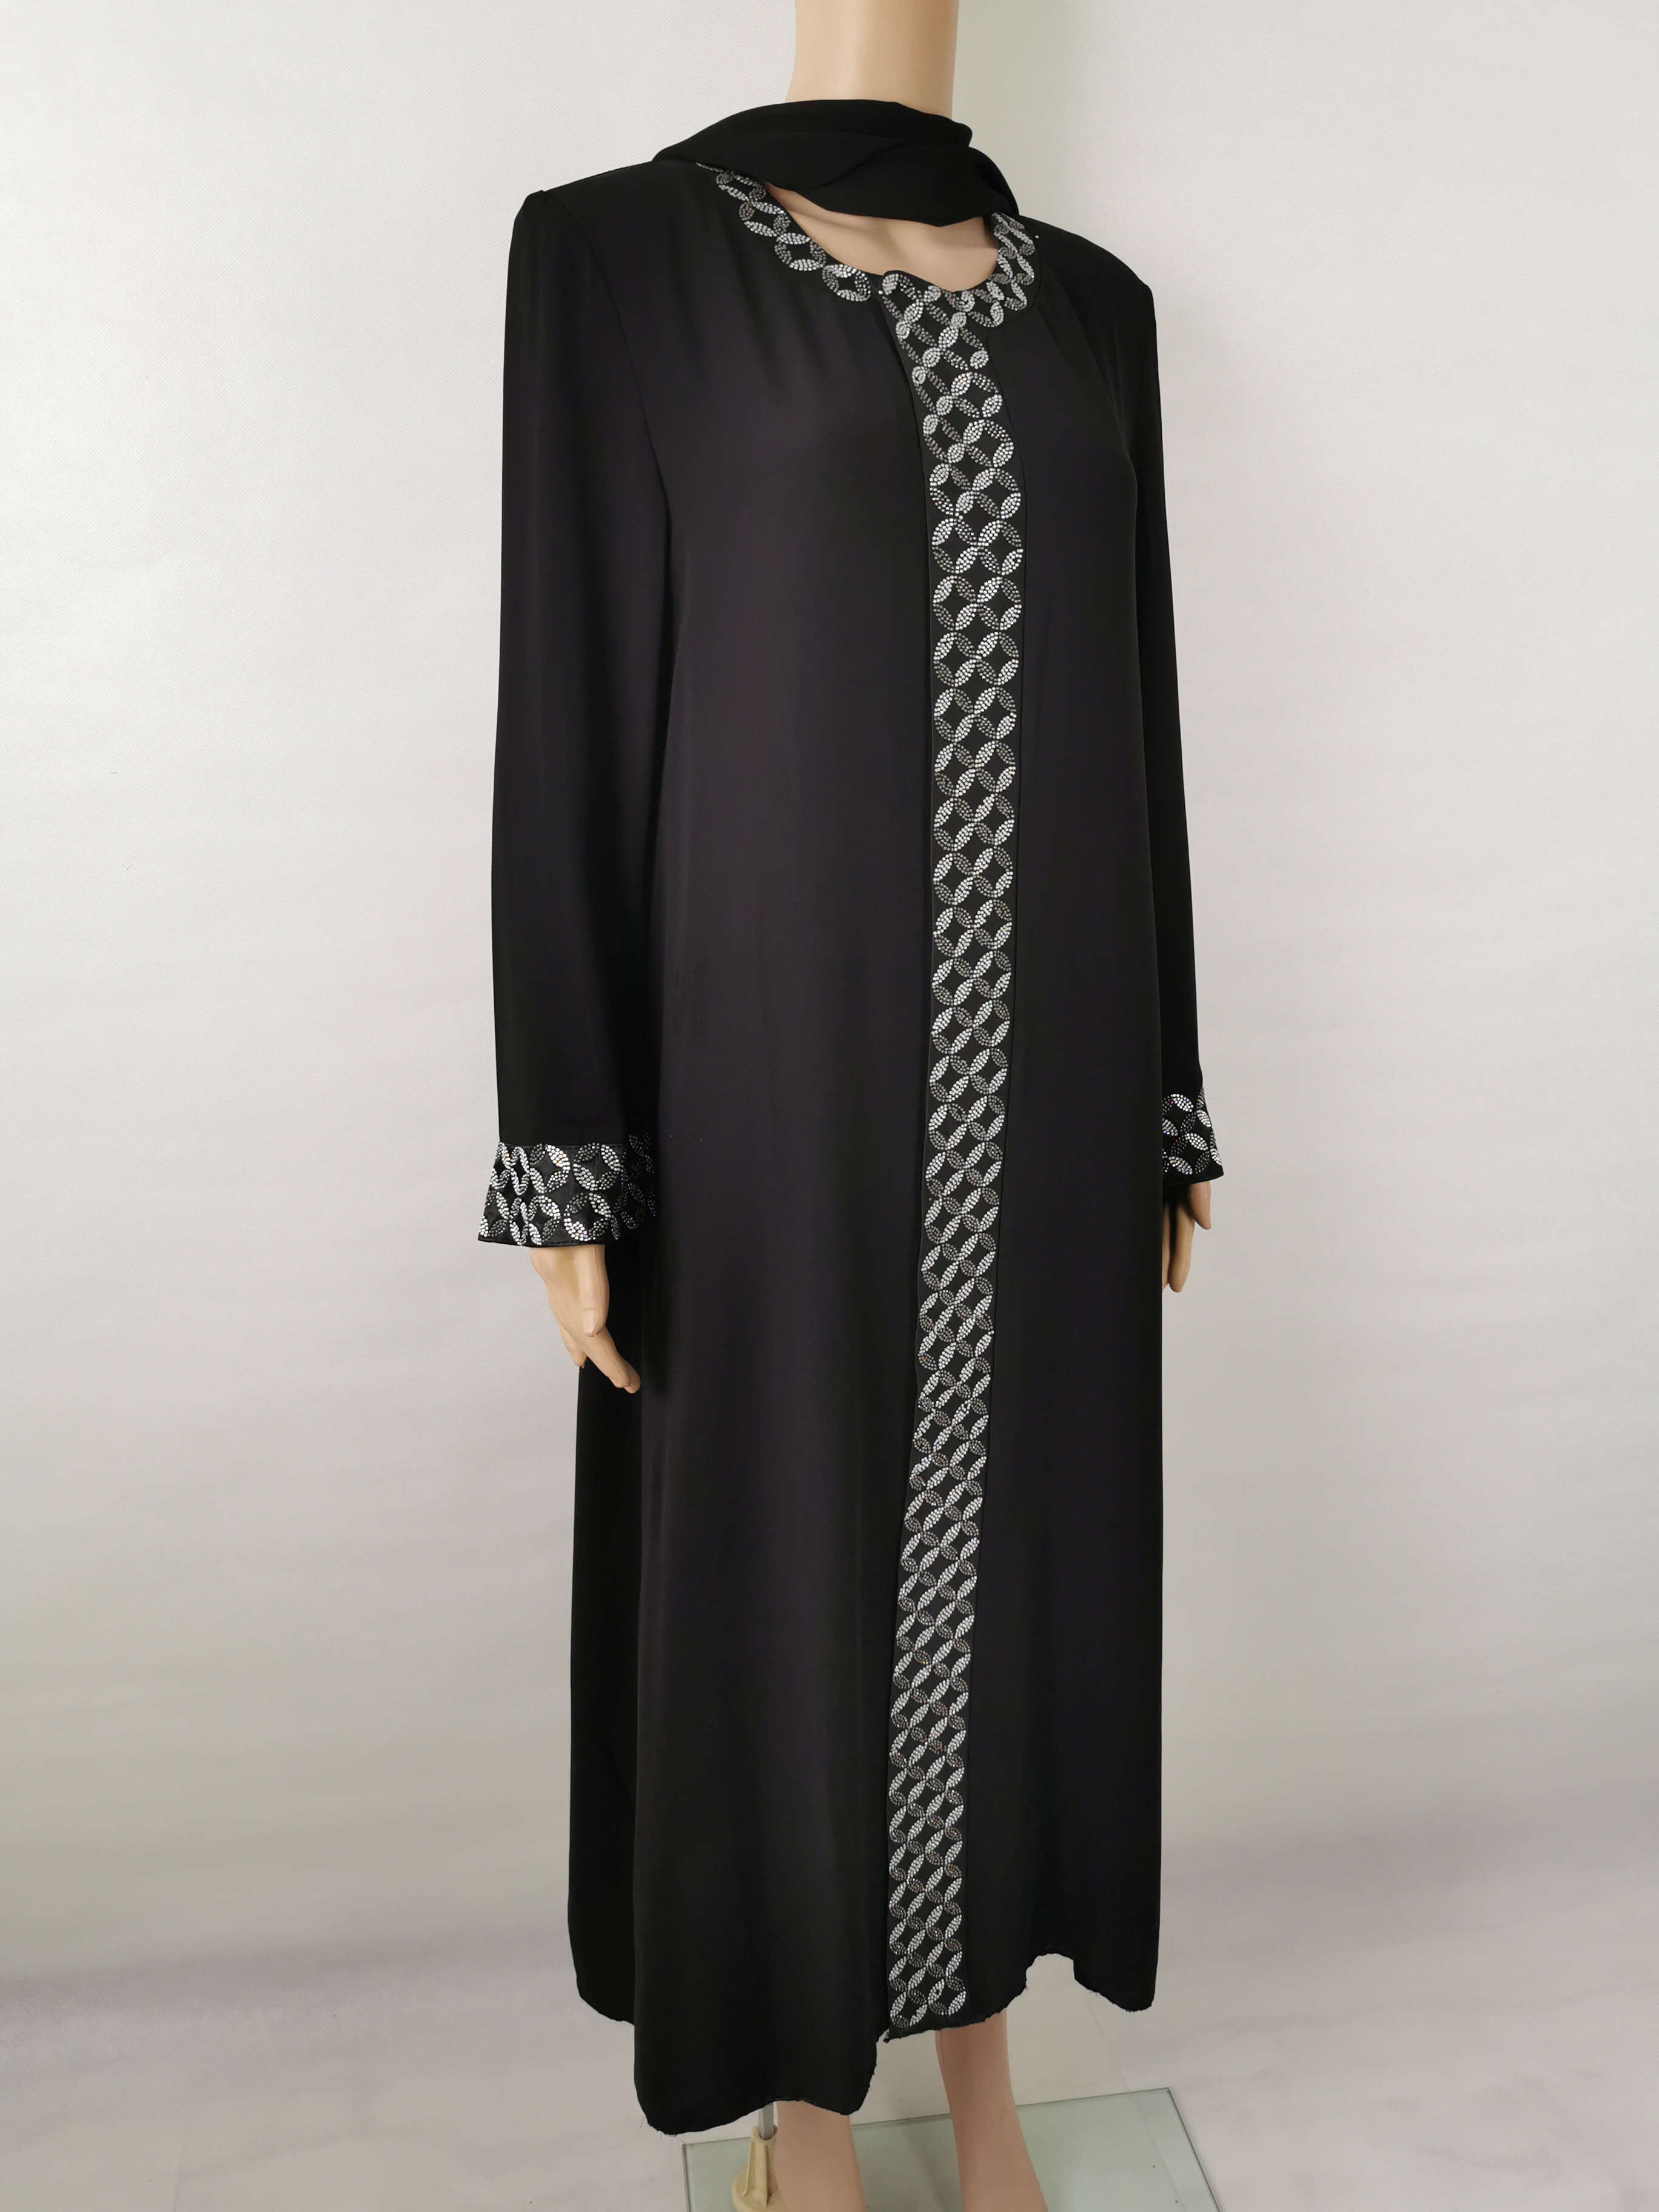 穆斯林女士女装 长袍 礼拜服迪拜时尚女装阿拉伯中东回族夏季薄款